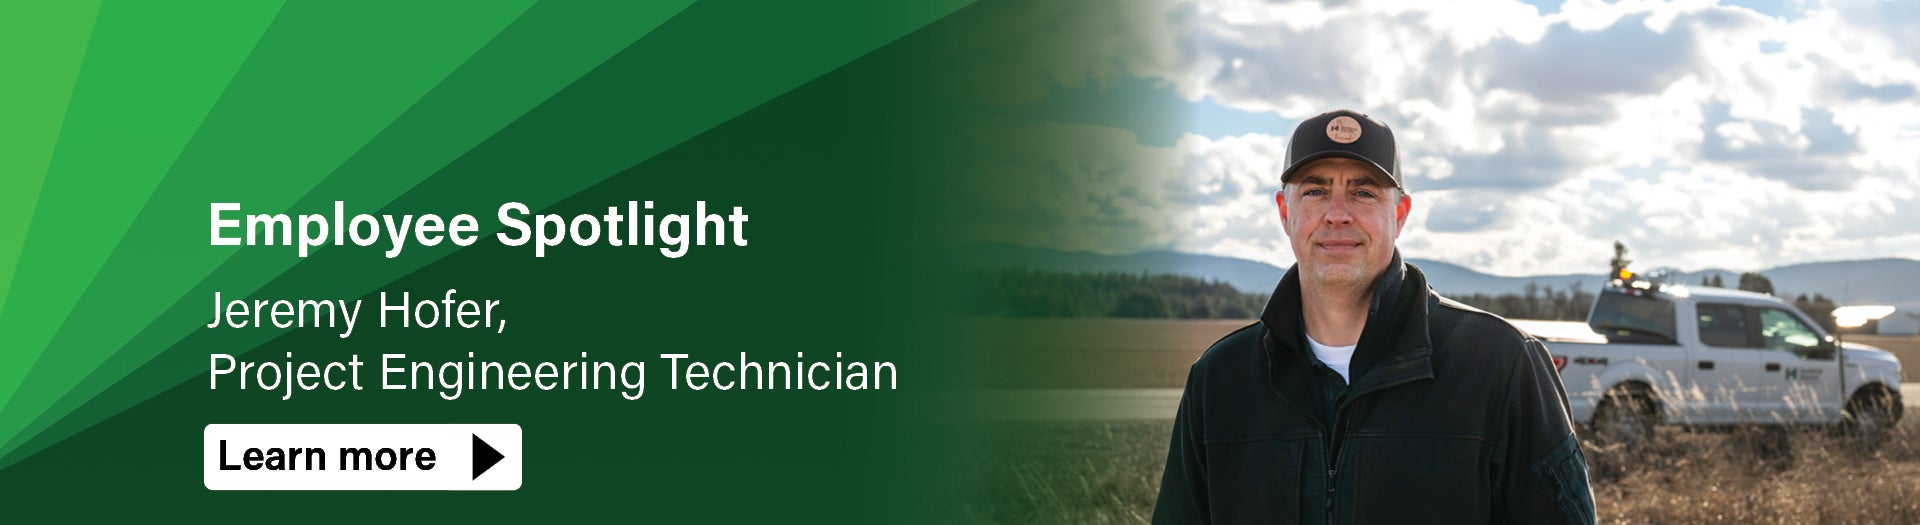 employee spotlight jeremy hofer project engineering technician learn more